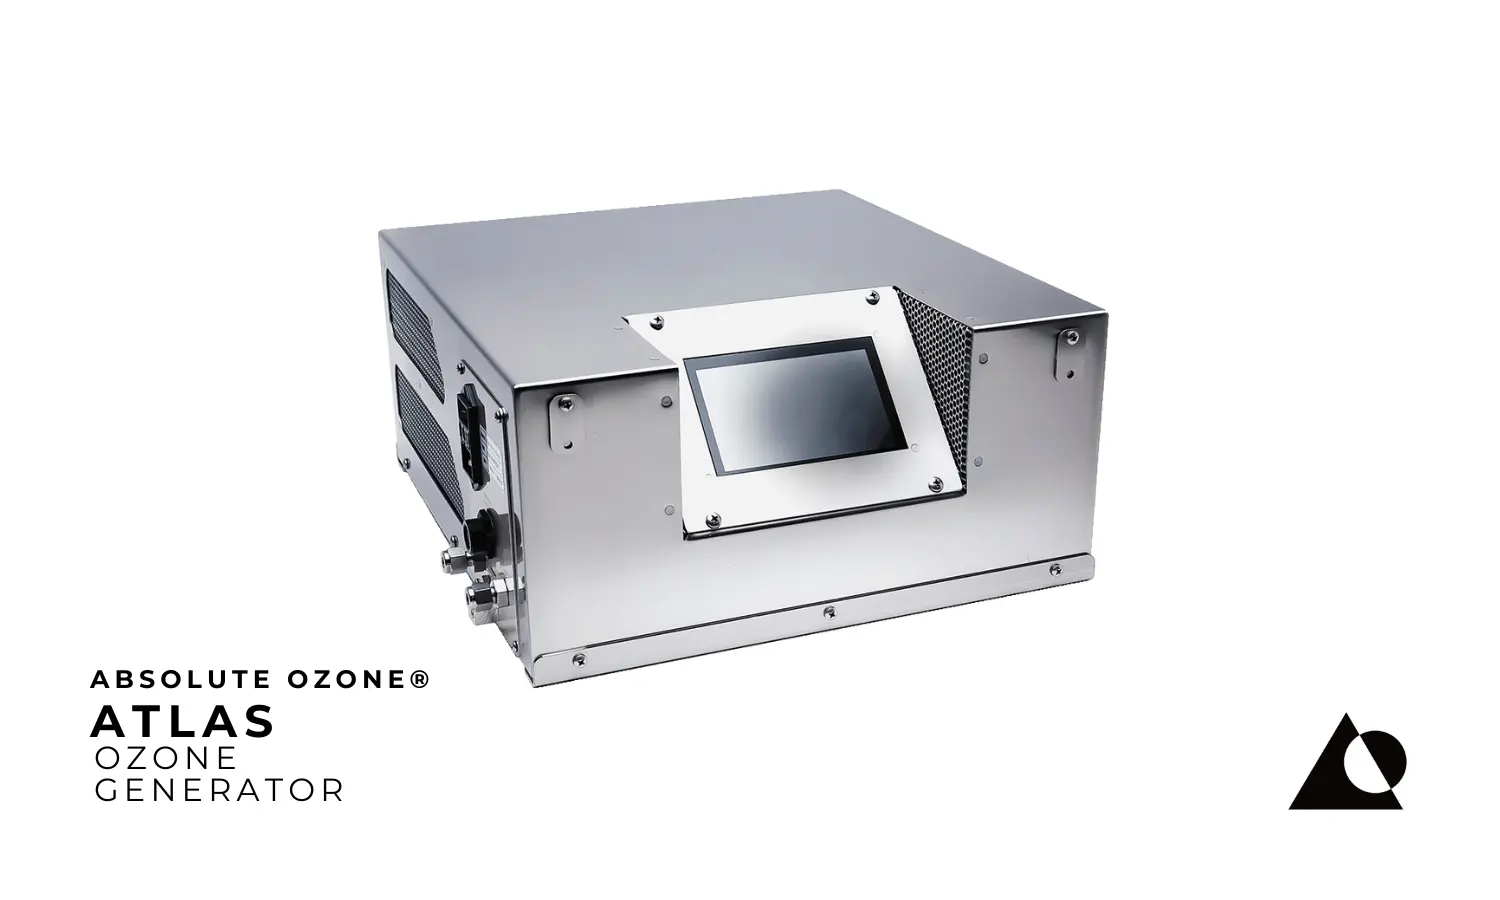 Absolute Ozone® Atlas Industrial Generador de Ozono